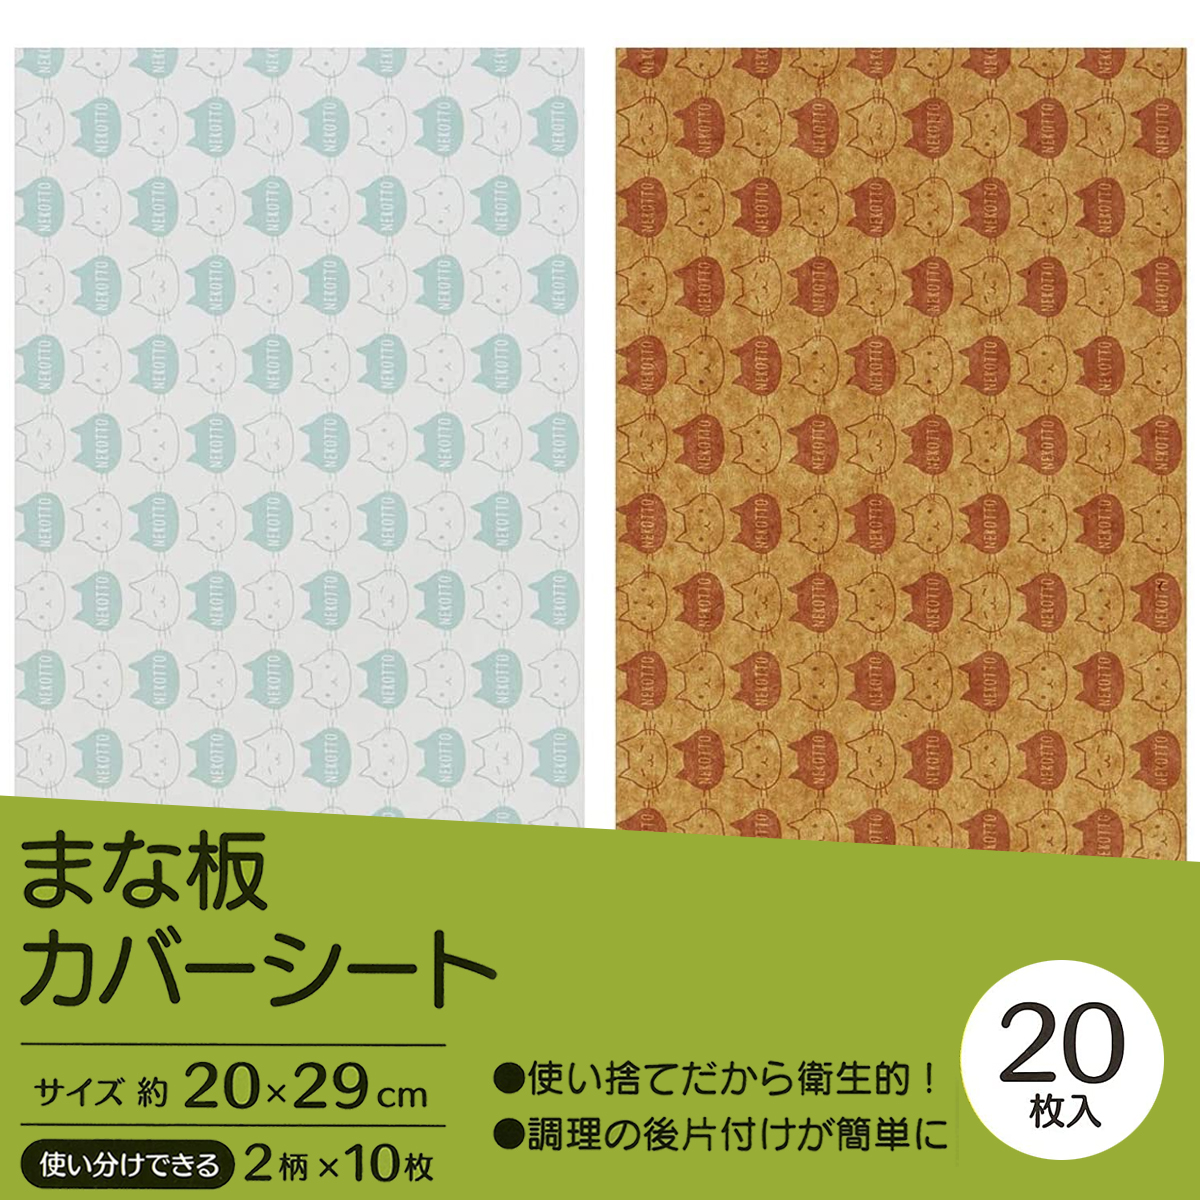 【キッチン便利小物】まな板カバーシート 20枚入 KMC1